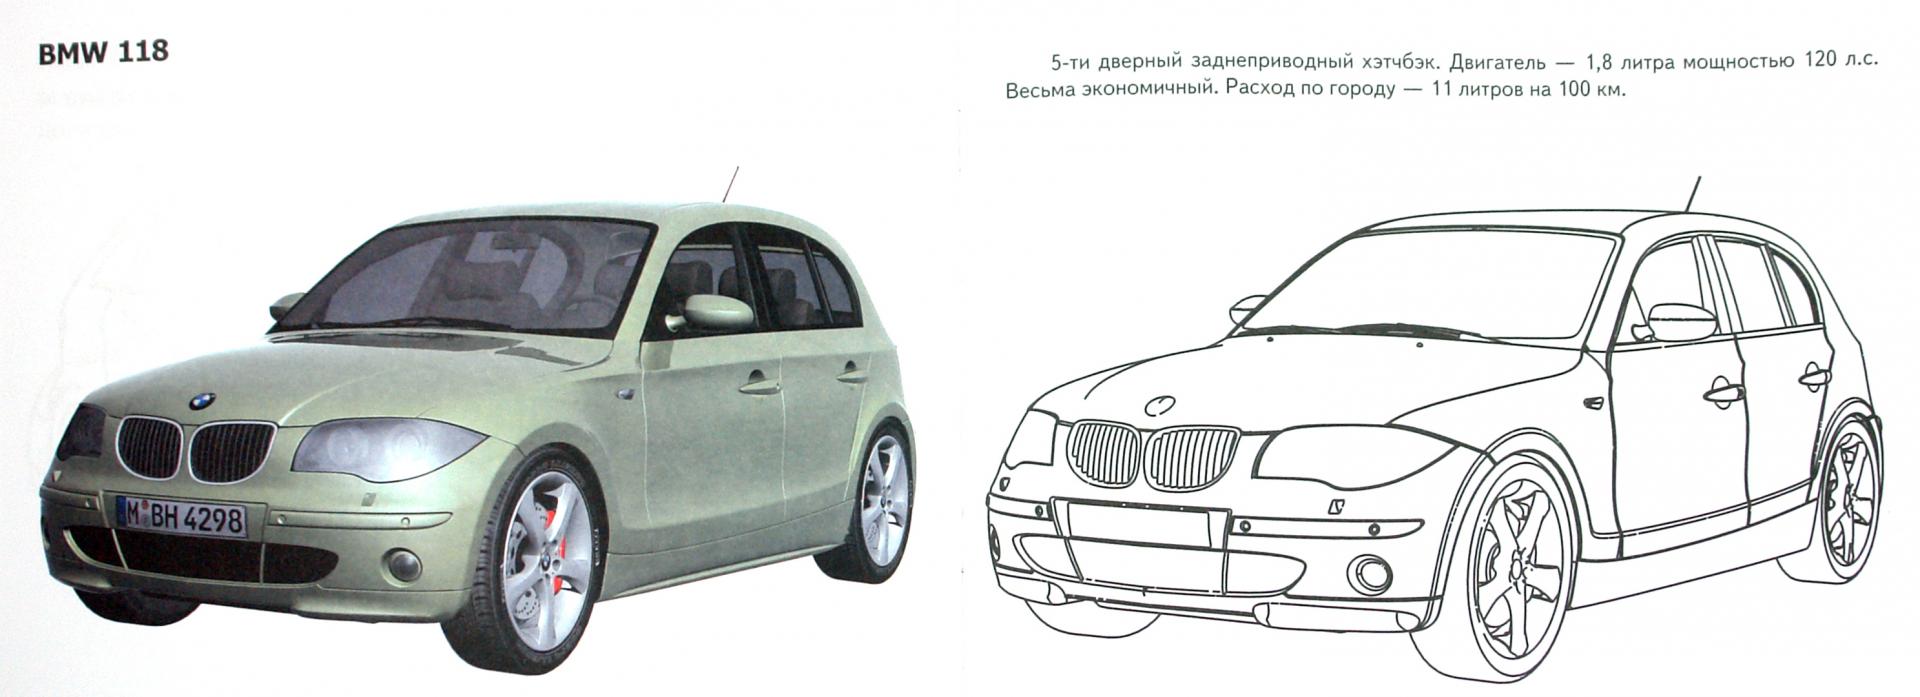 Иллюстрация 1 из 7 для Автомобили-модели мира. Германия | Лабиринт - книги. Источник: Лабиринт